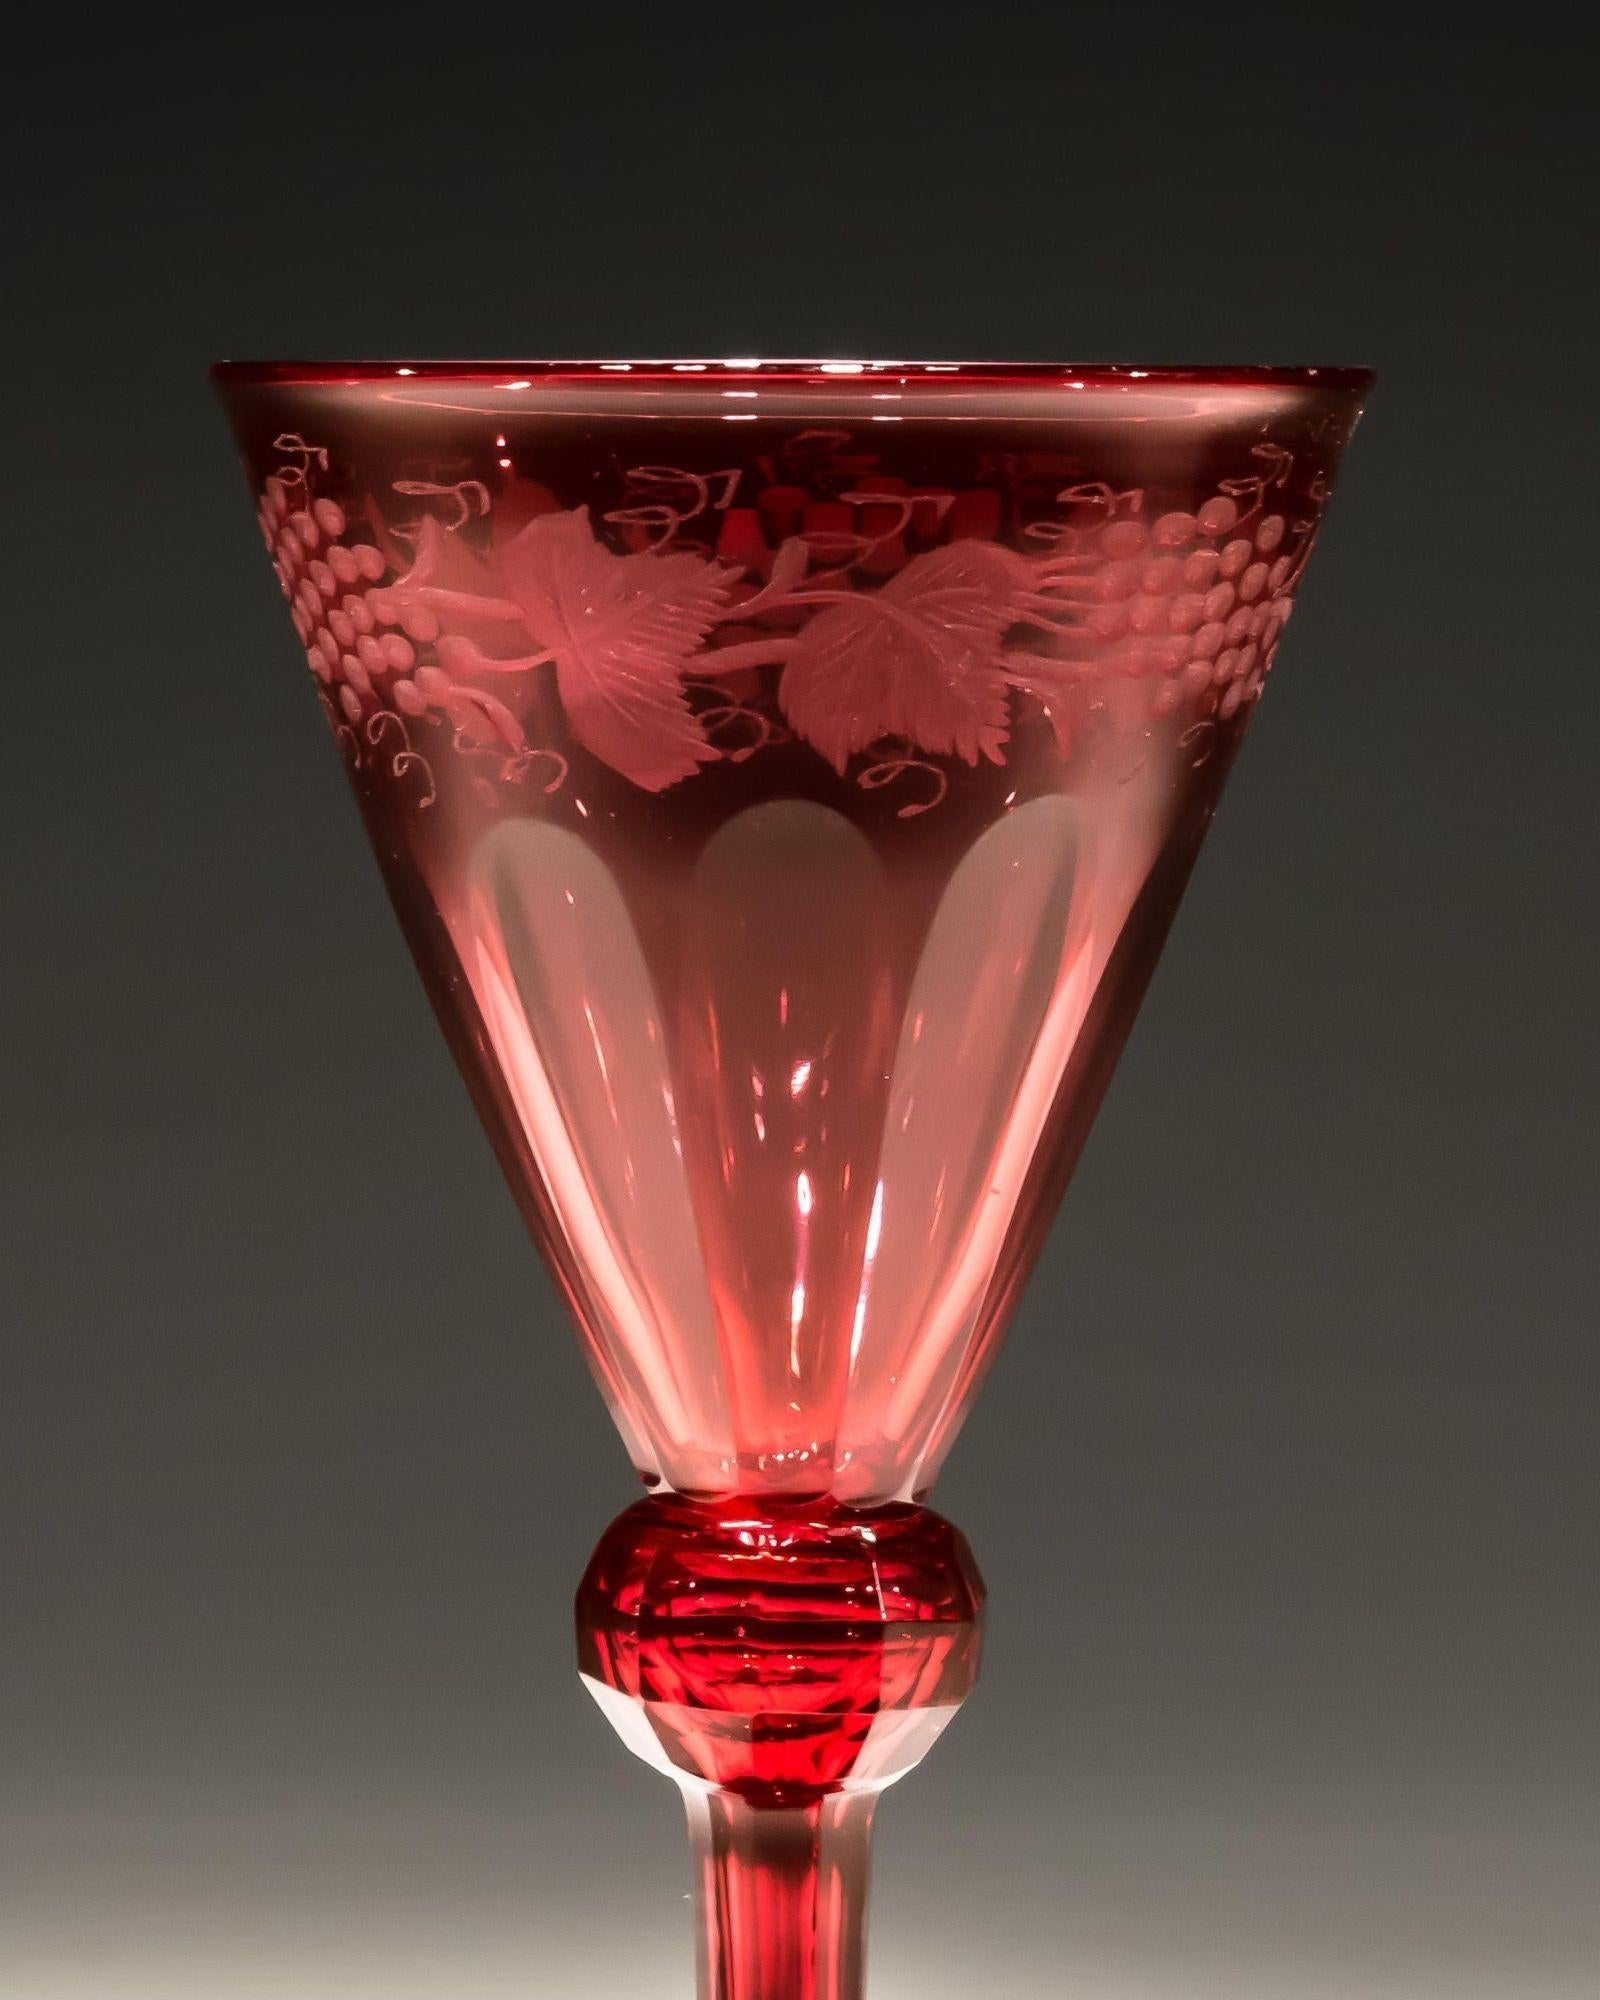 Juego de cuatro copas de vino tinto grabadas con vides frutales.

Inglaterra, hacia 1840.

Medidas: Altura: 13,5 cm (5 1/4